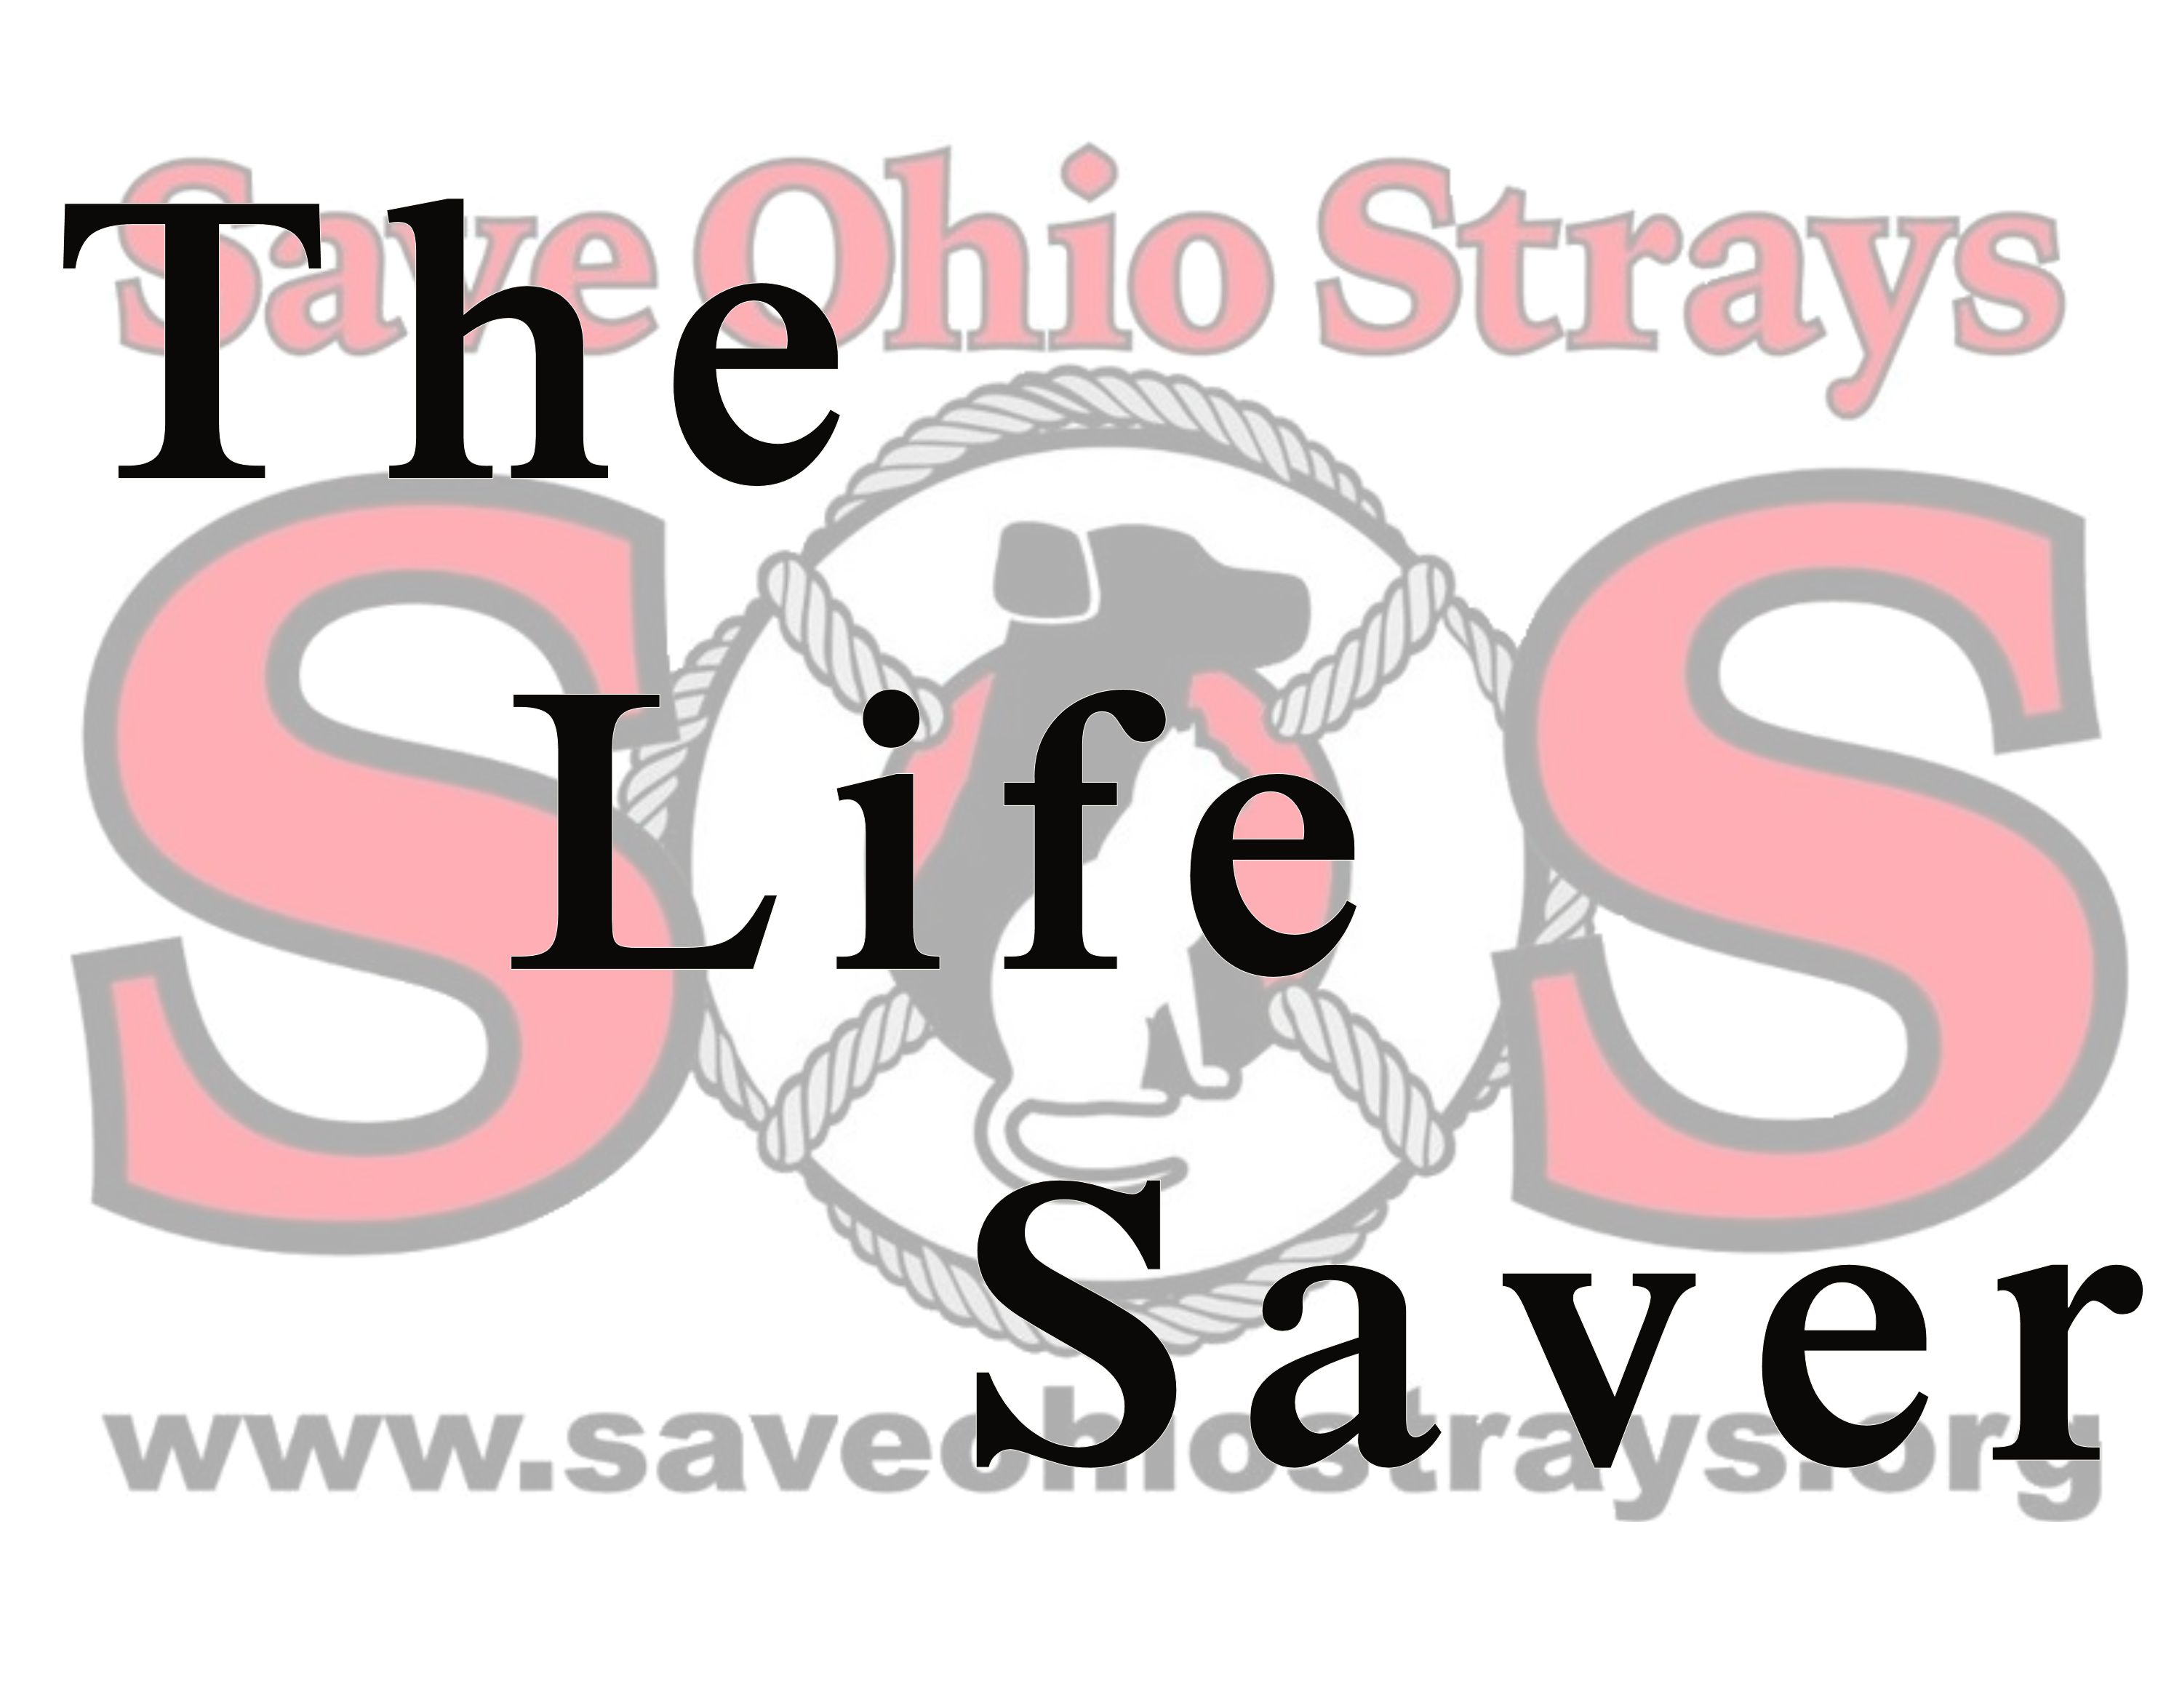 Save Ohio Strays